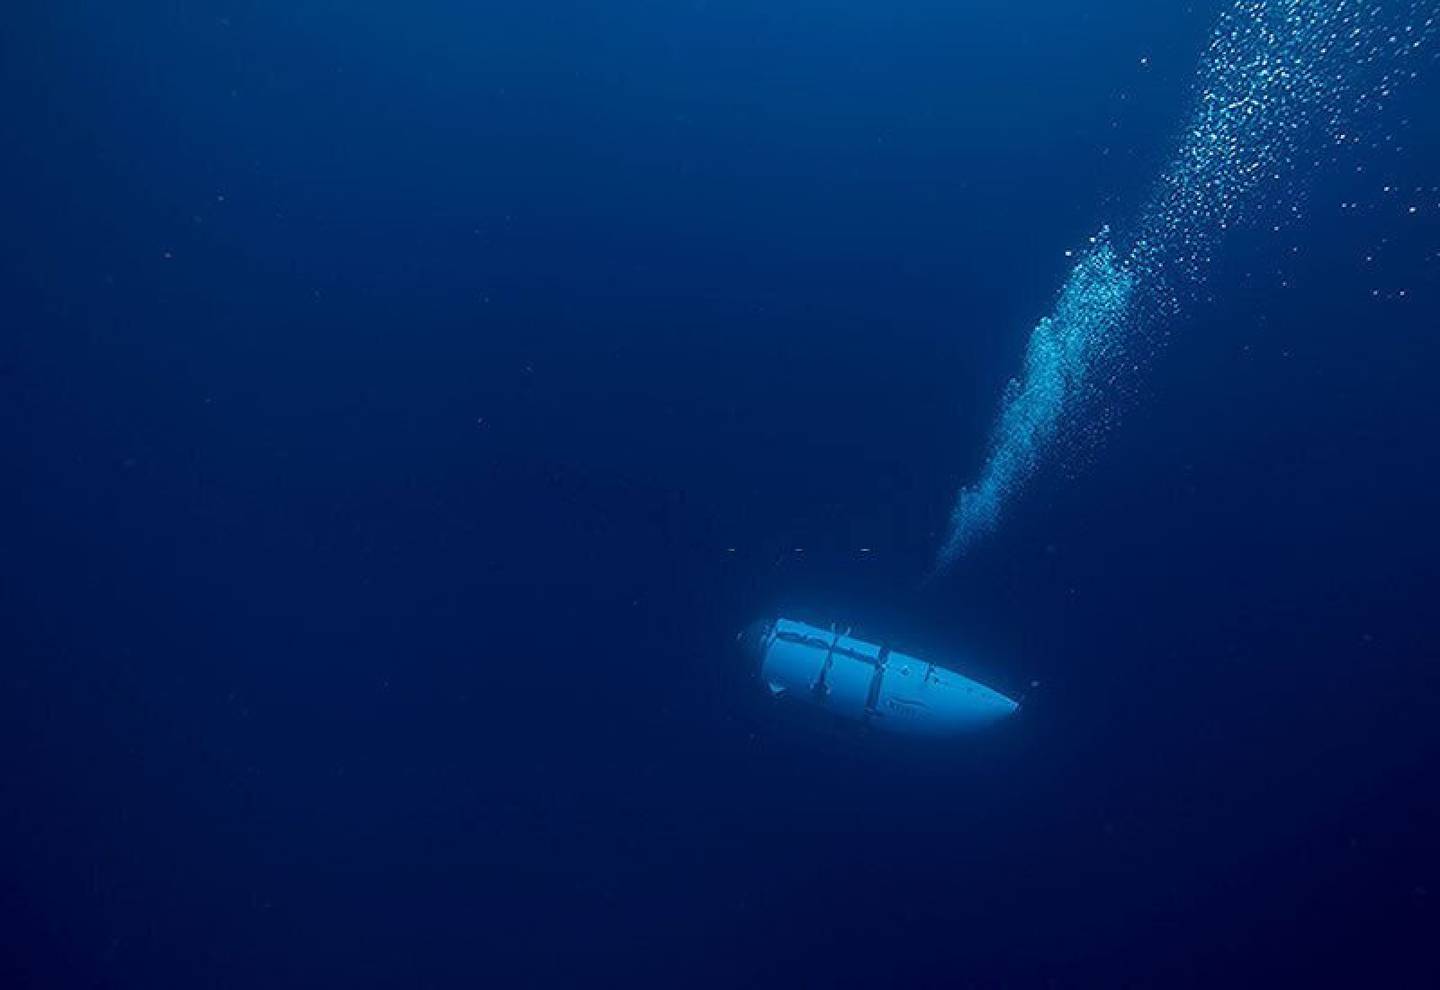 Titan, el submarino de OceanGate